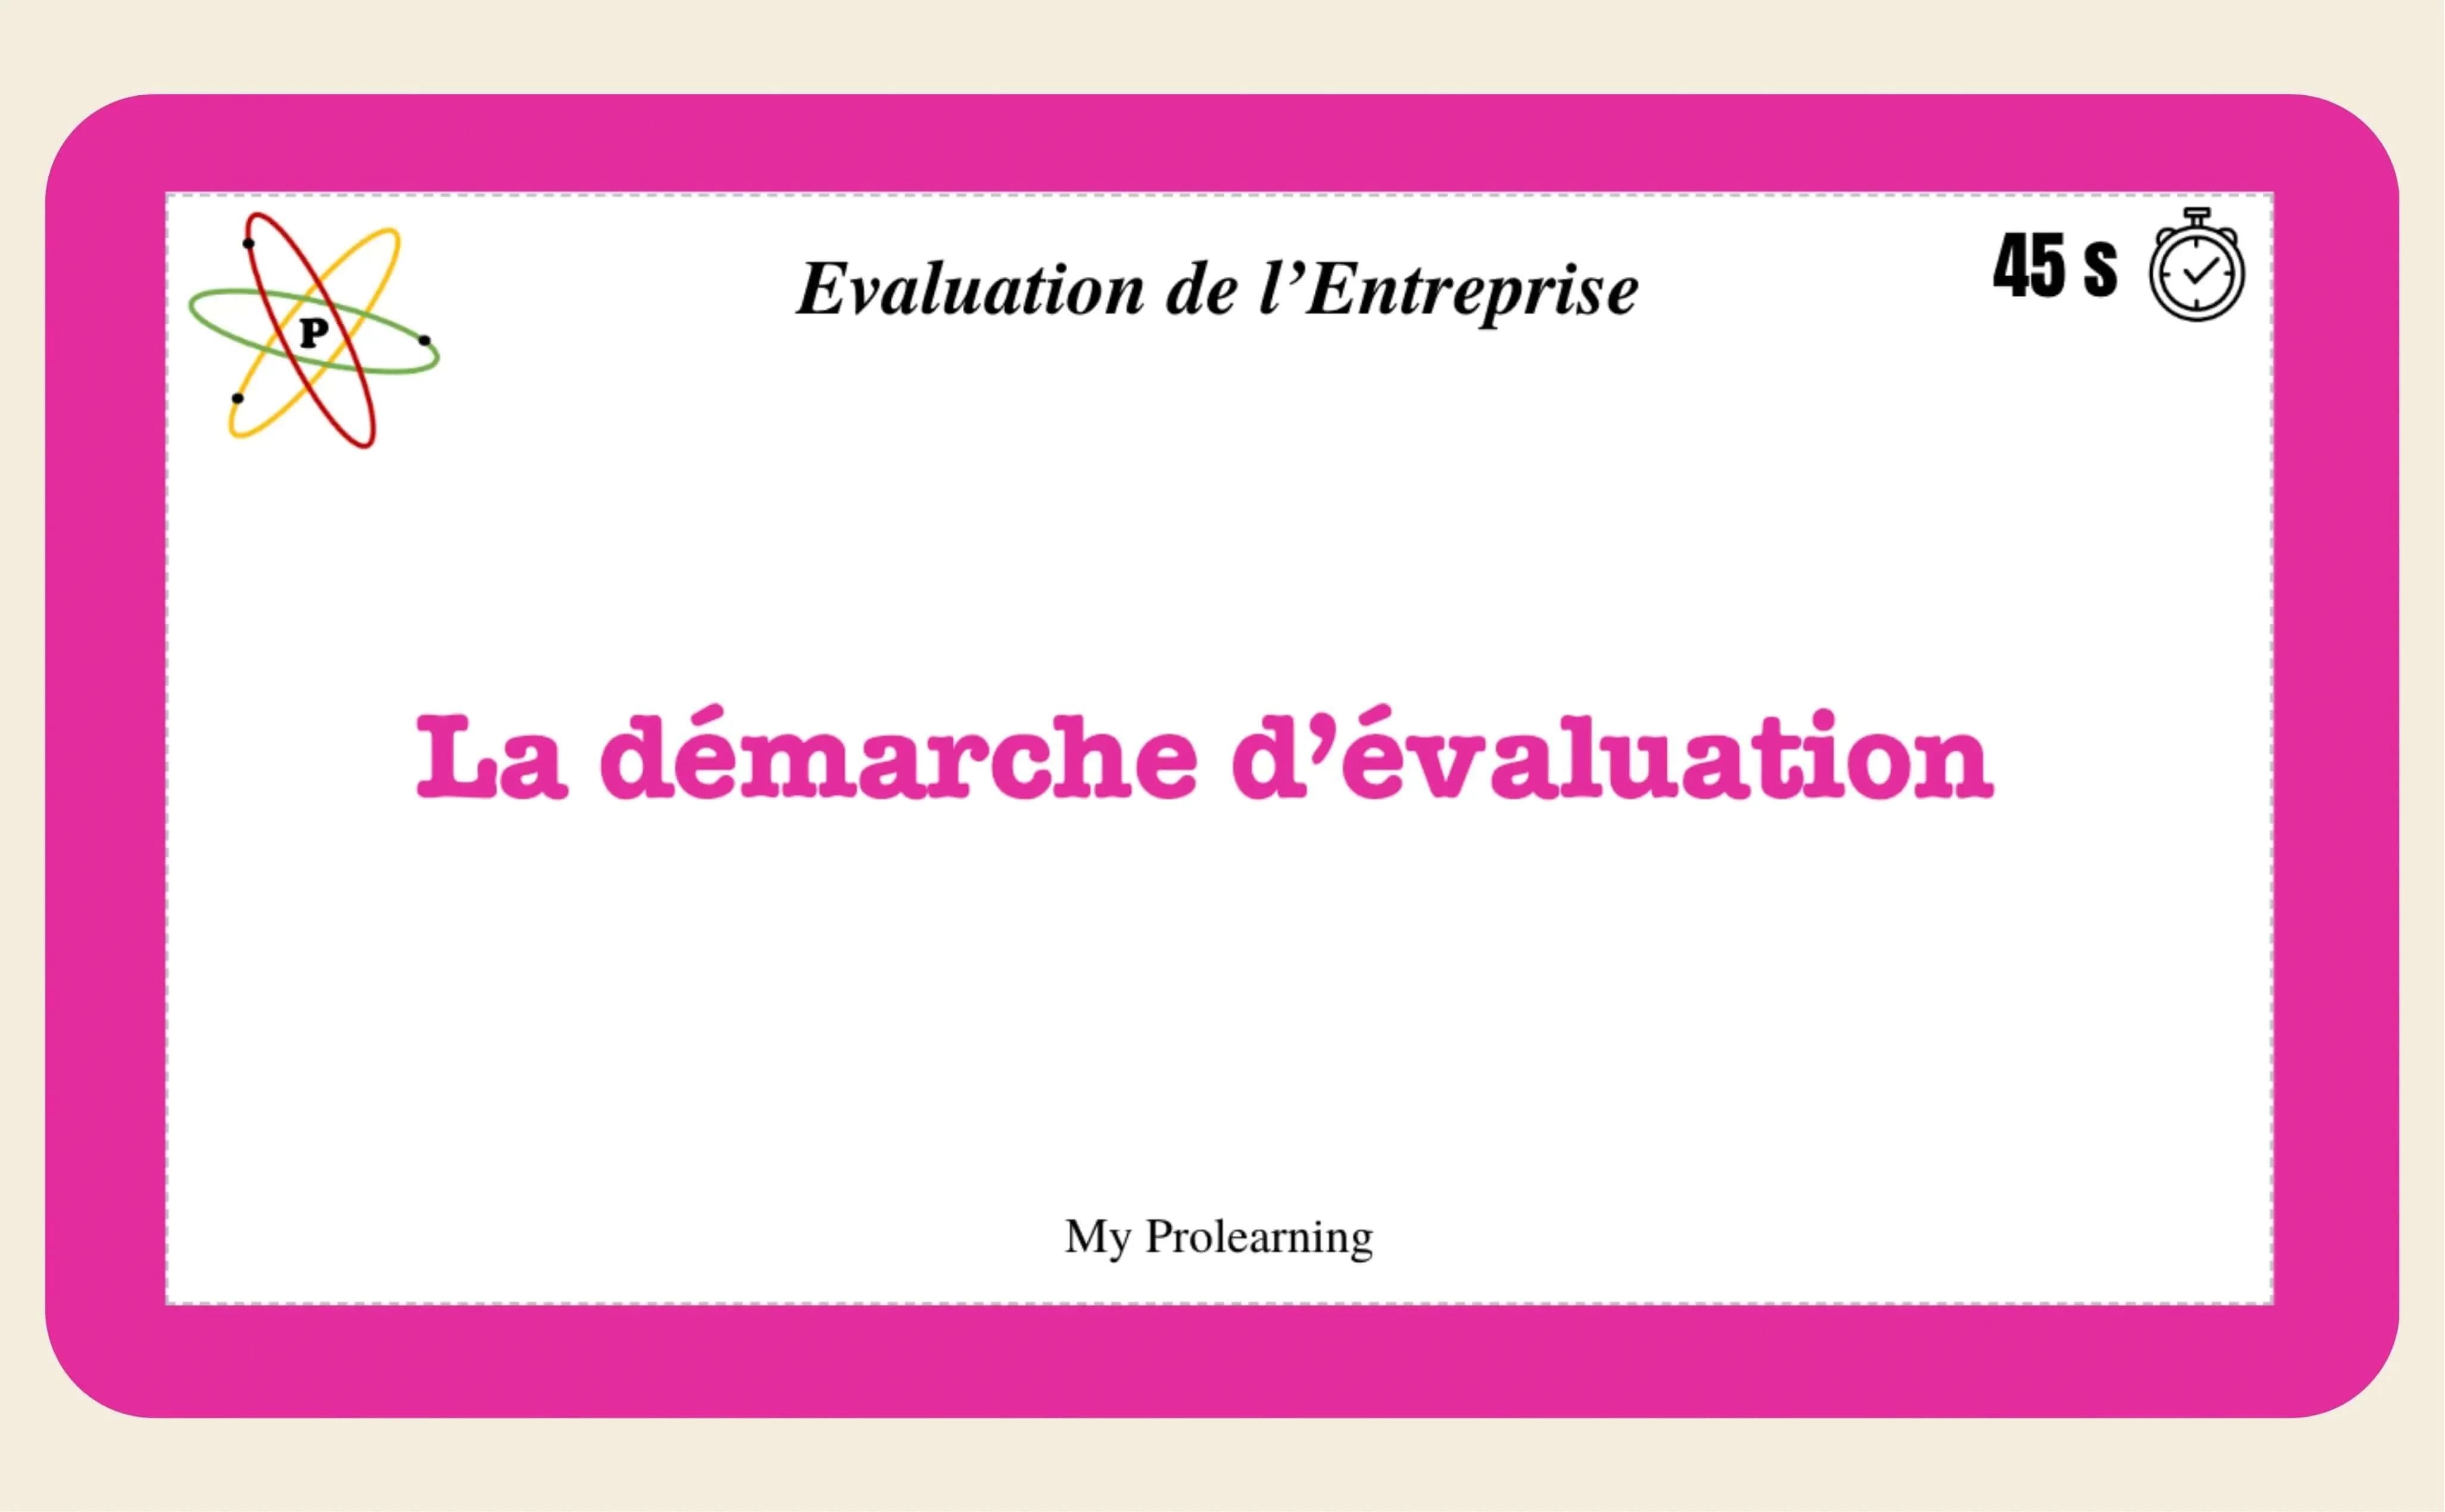 FICHE D'ÉVALUATION DE L'ENTREPRISE - My Prolearning 